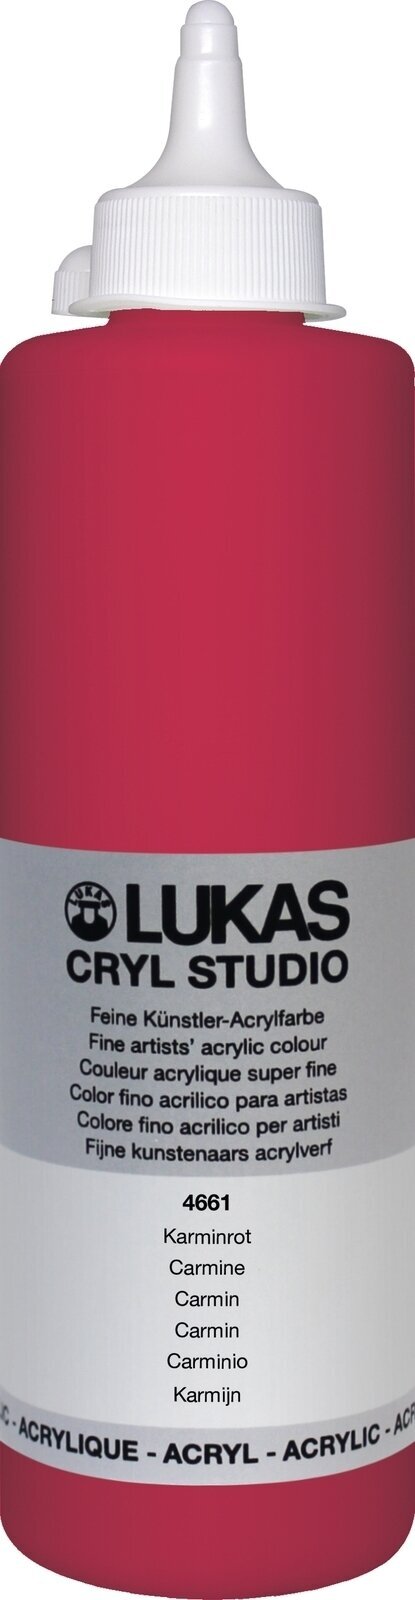 Akrylfärg Lukas Cryl Studio Akrylfärg 500 ml Carmine